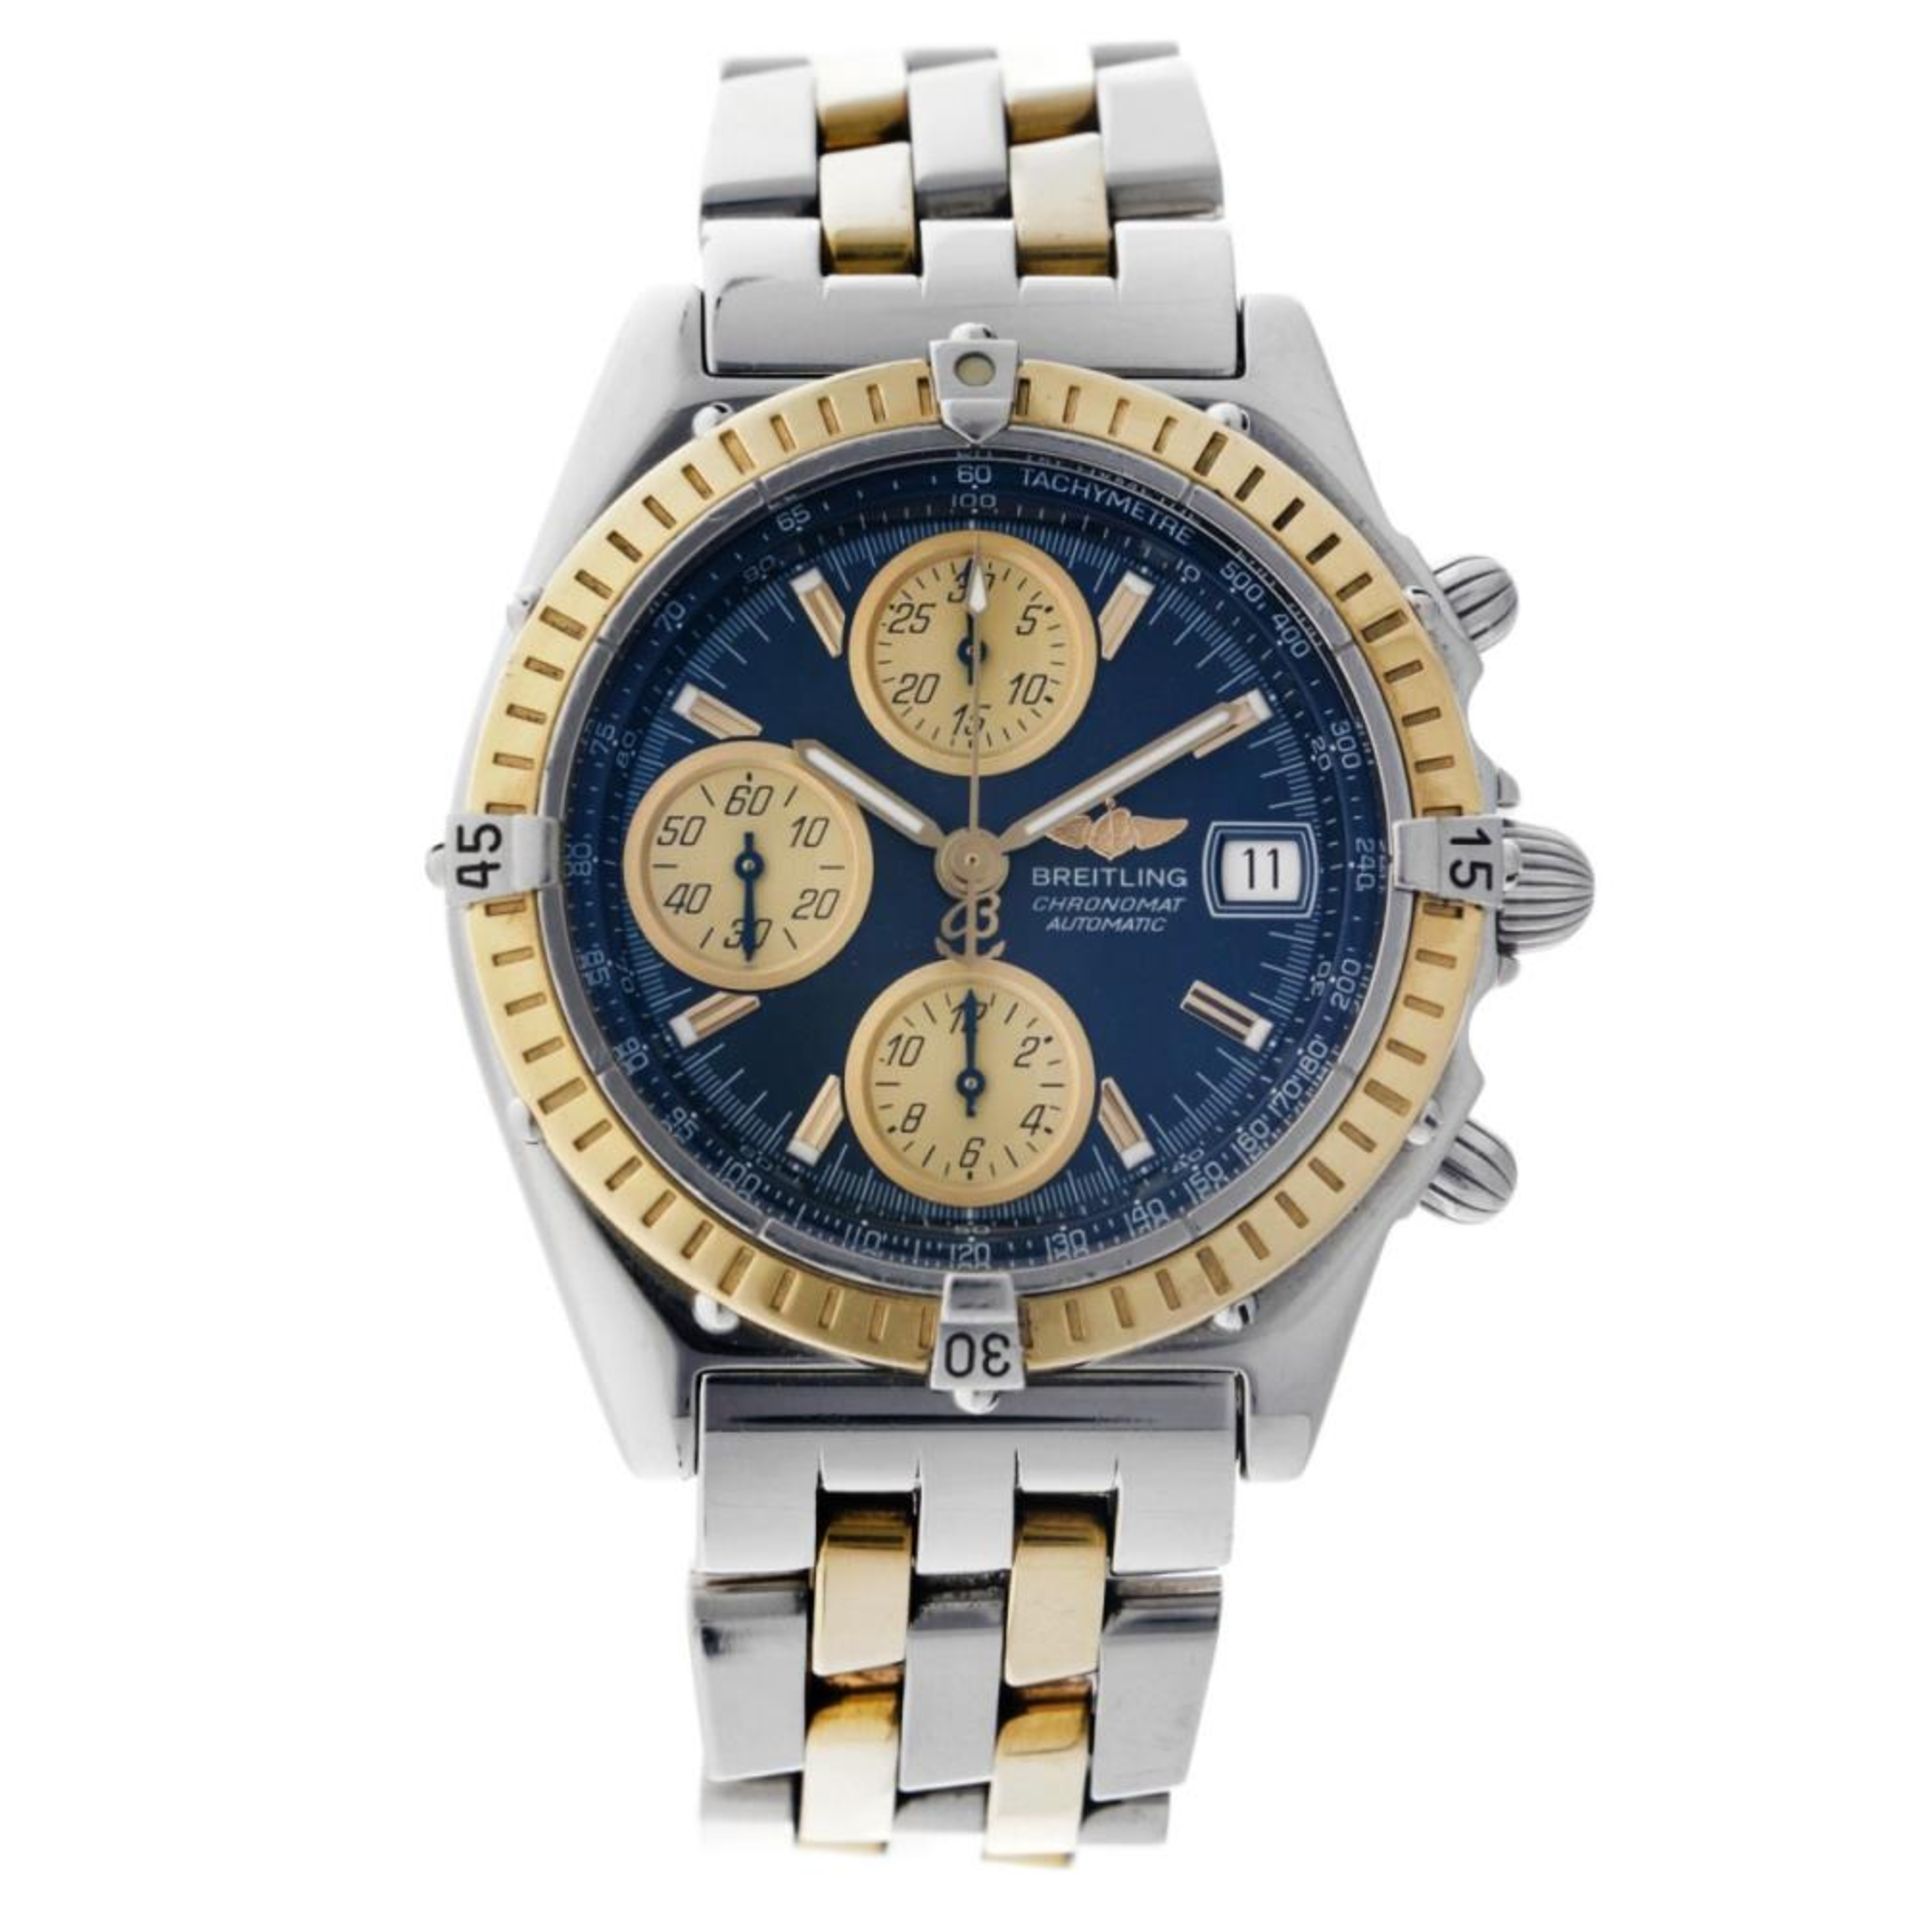 Breitling Chronomat D13350 - Men's watch - 2000.